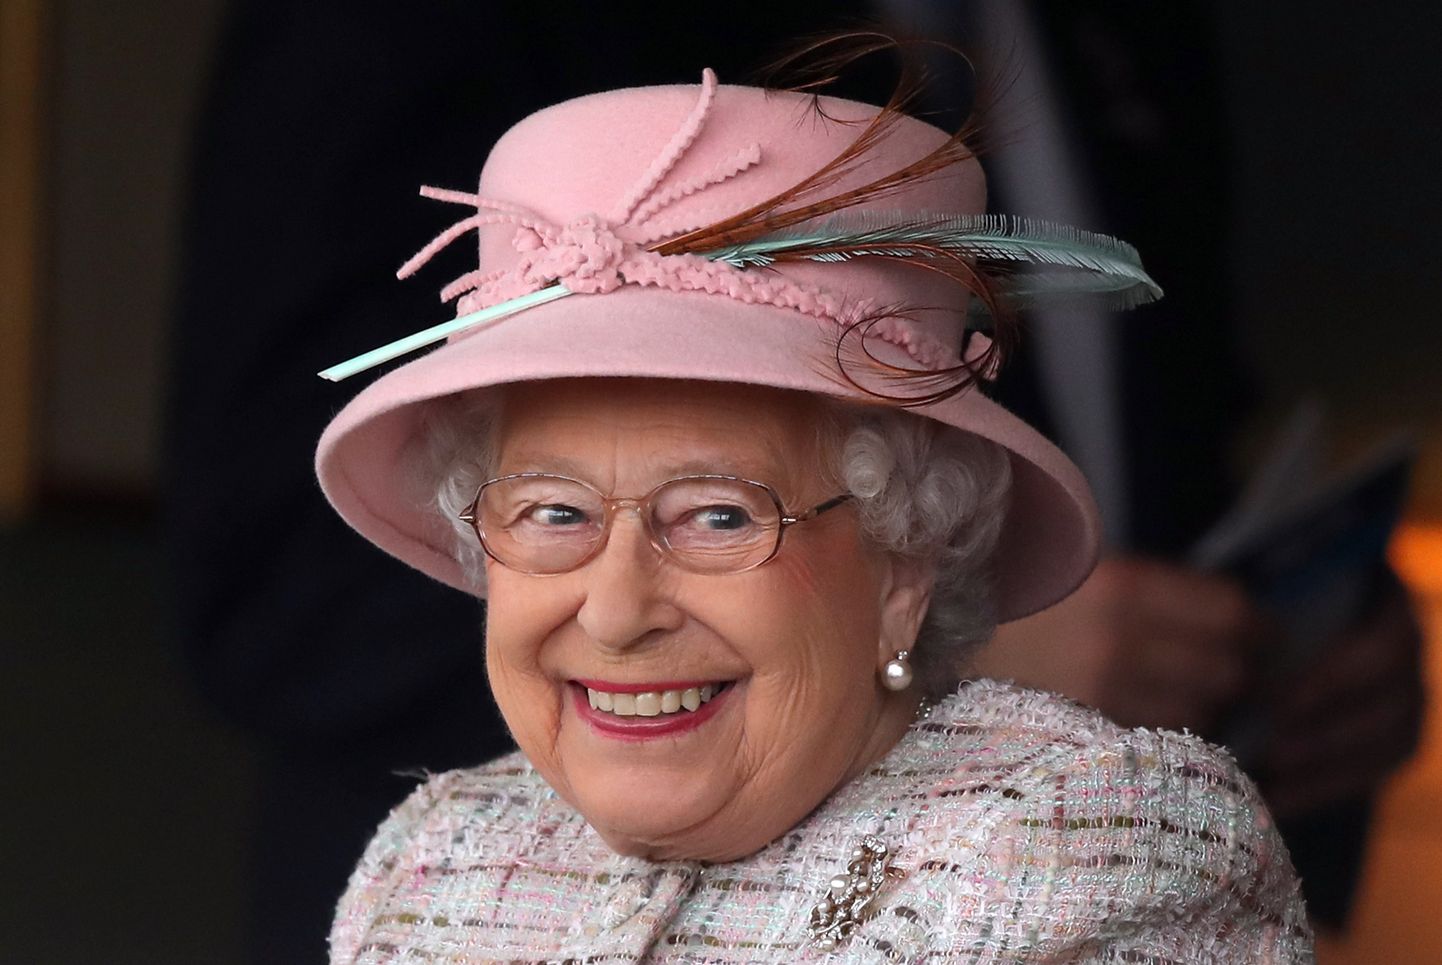 Kuninganna oma 91. sünnipäeval, 21. aprillil 2017. aastal.